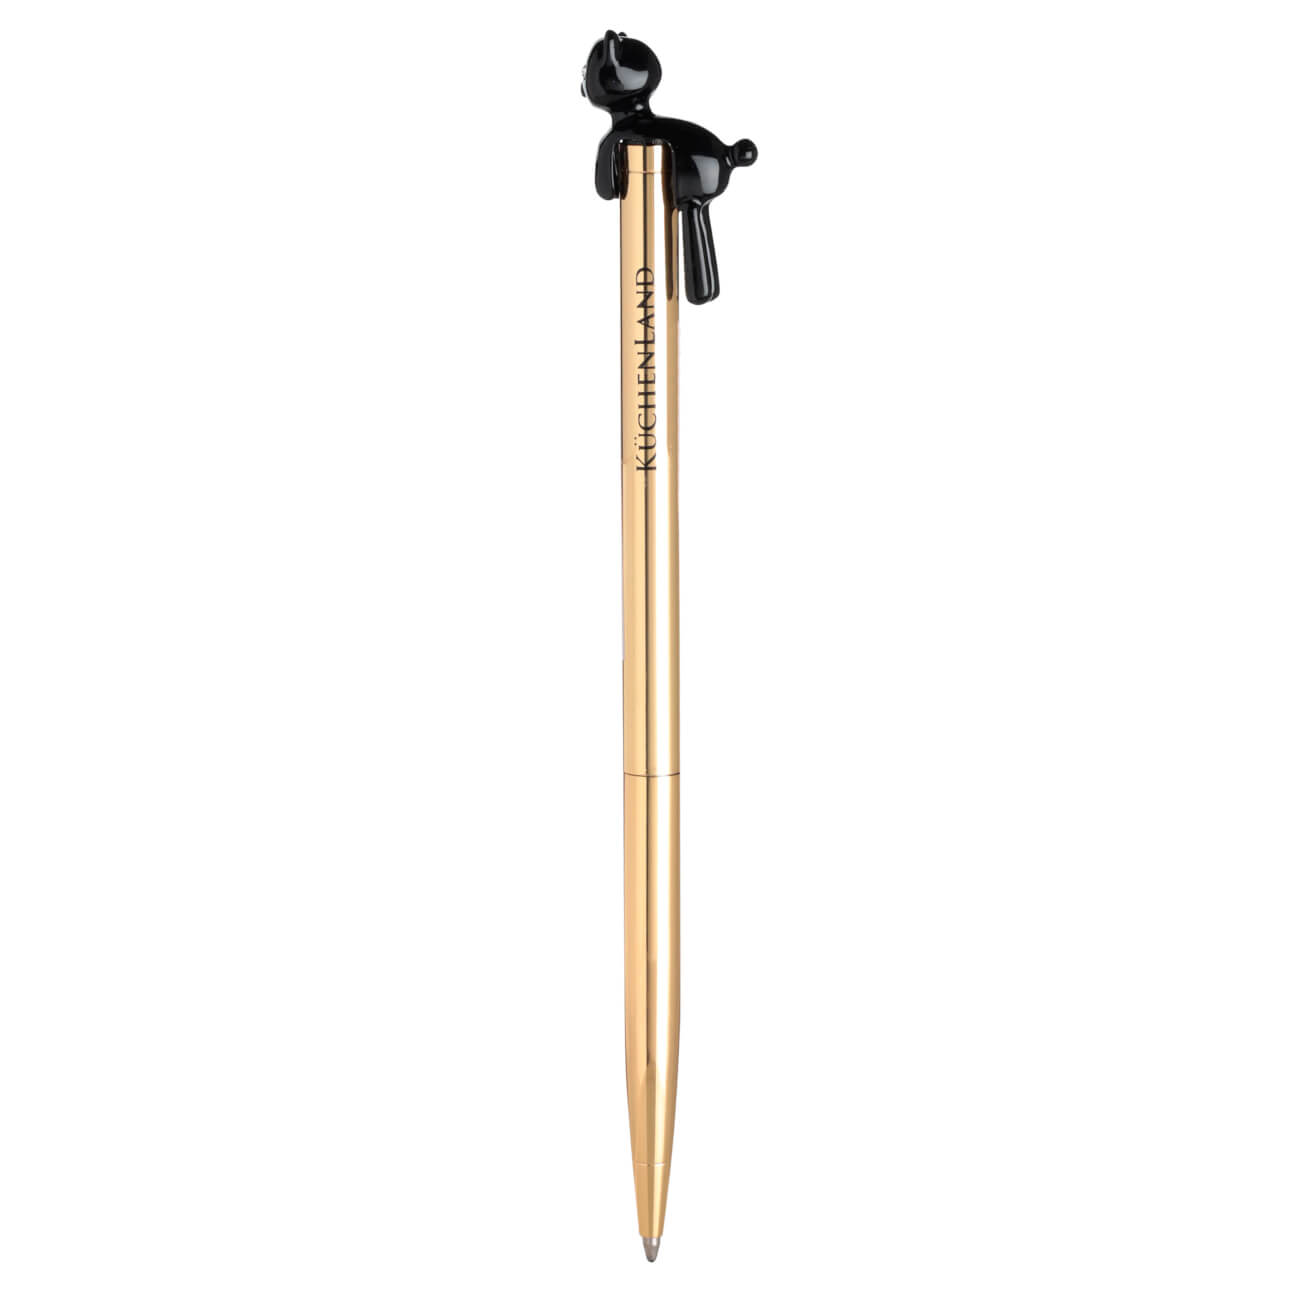 Ручка шариковая, 14 см, с фигуркой, металл, золотистая, Черный кот, Draw figure ручка шариковая 13 см с кристаллом металл серебристая draw